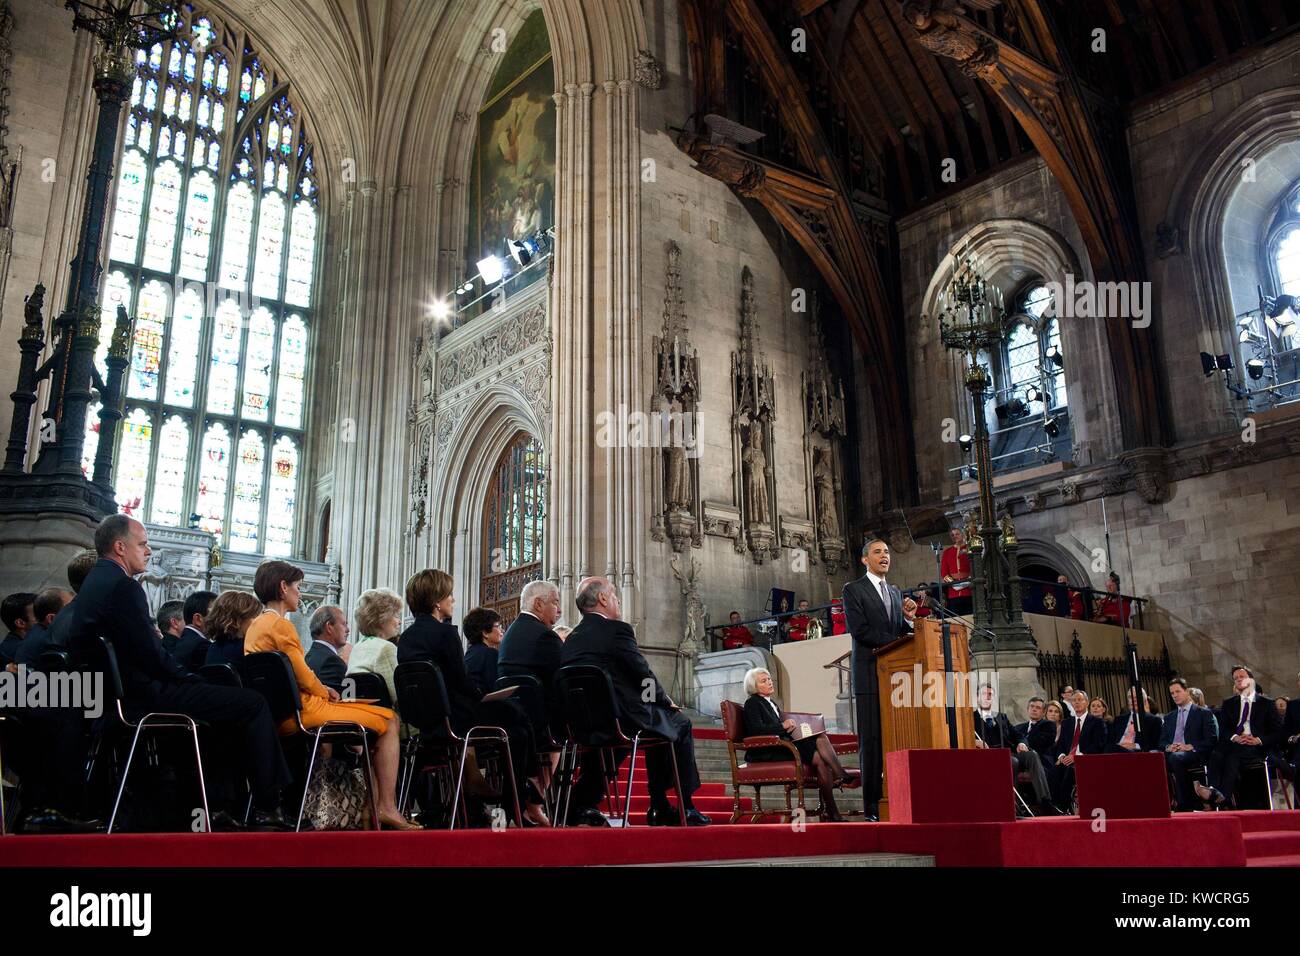 Le président Barack Obama parle aux membres des deux Chambres du Parlement à Westminster Hall. Londres, Angleterre, le 25 mai 2011 (BSLOC_2015_3_221) Banque D'Images